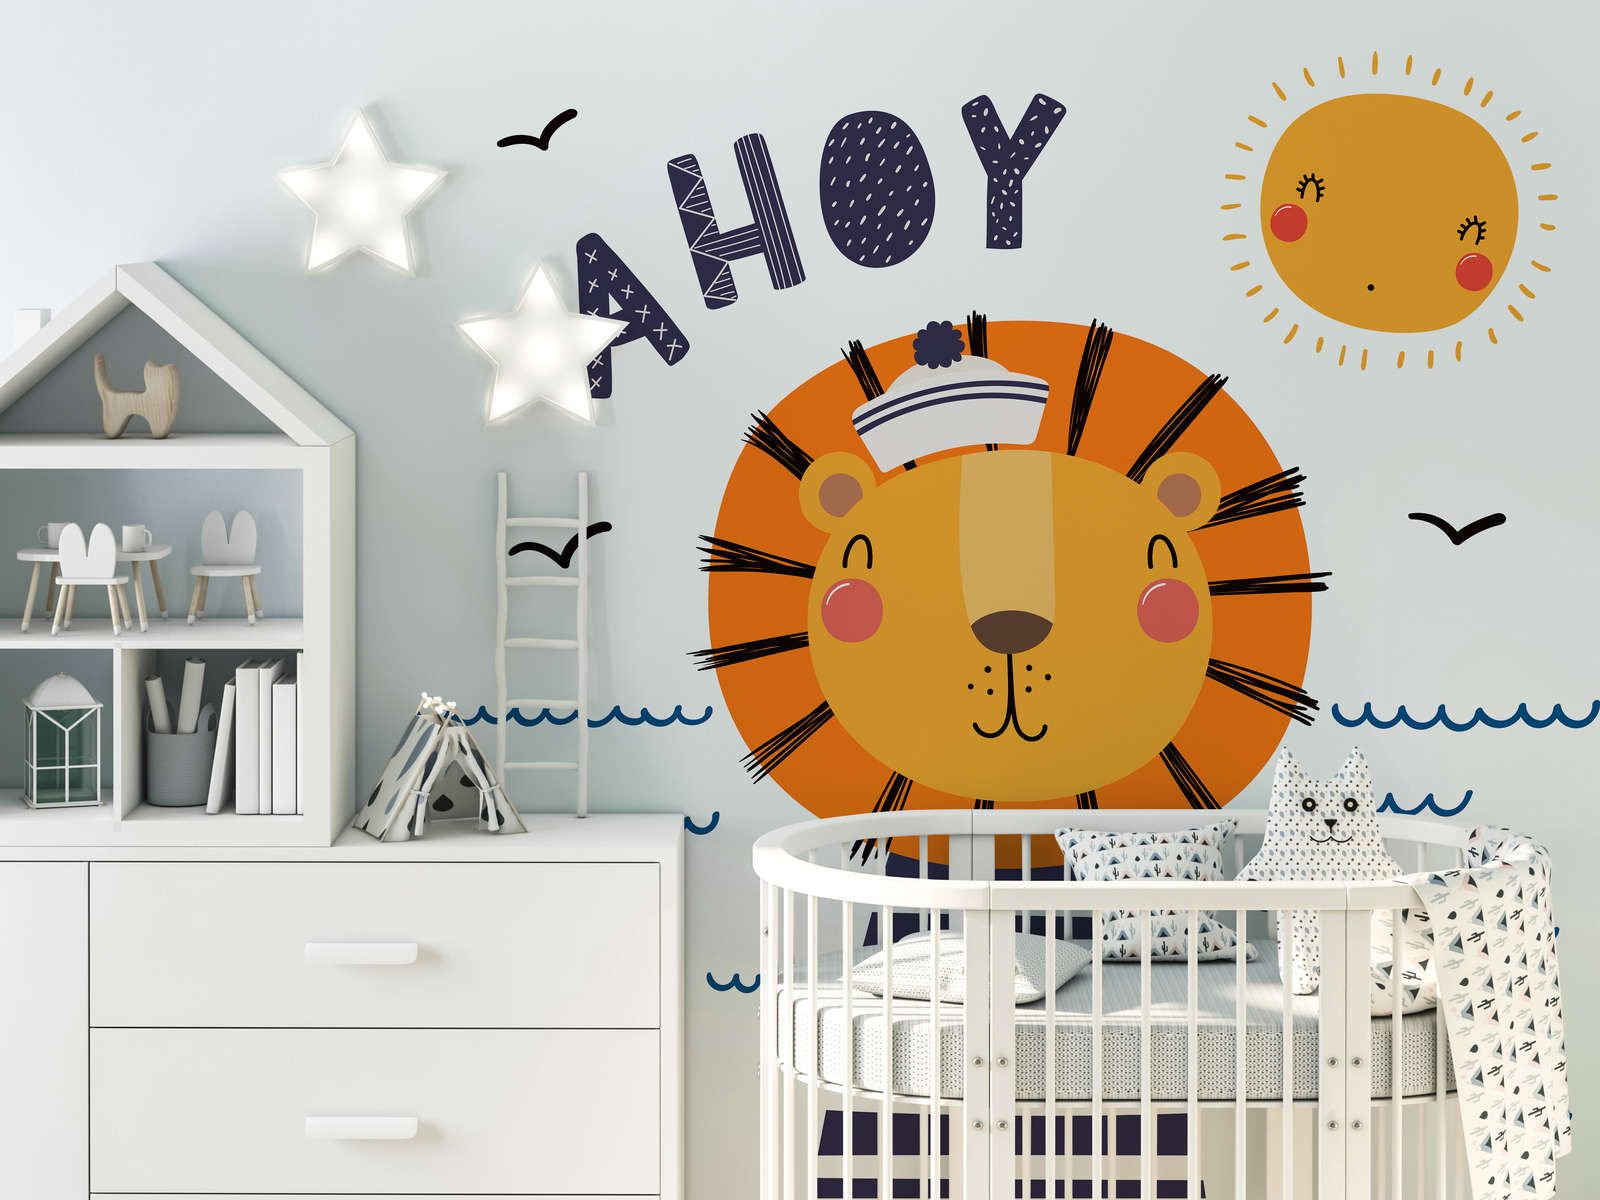             papiers peints à impression numérique pour chambre d'enfant avec un pirate lion - intissé lisse & légèrement brillant
        